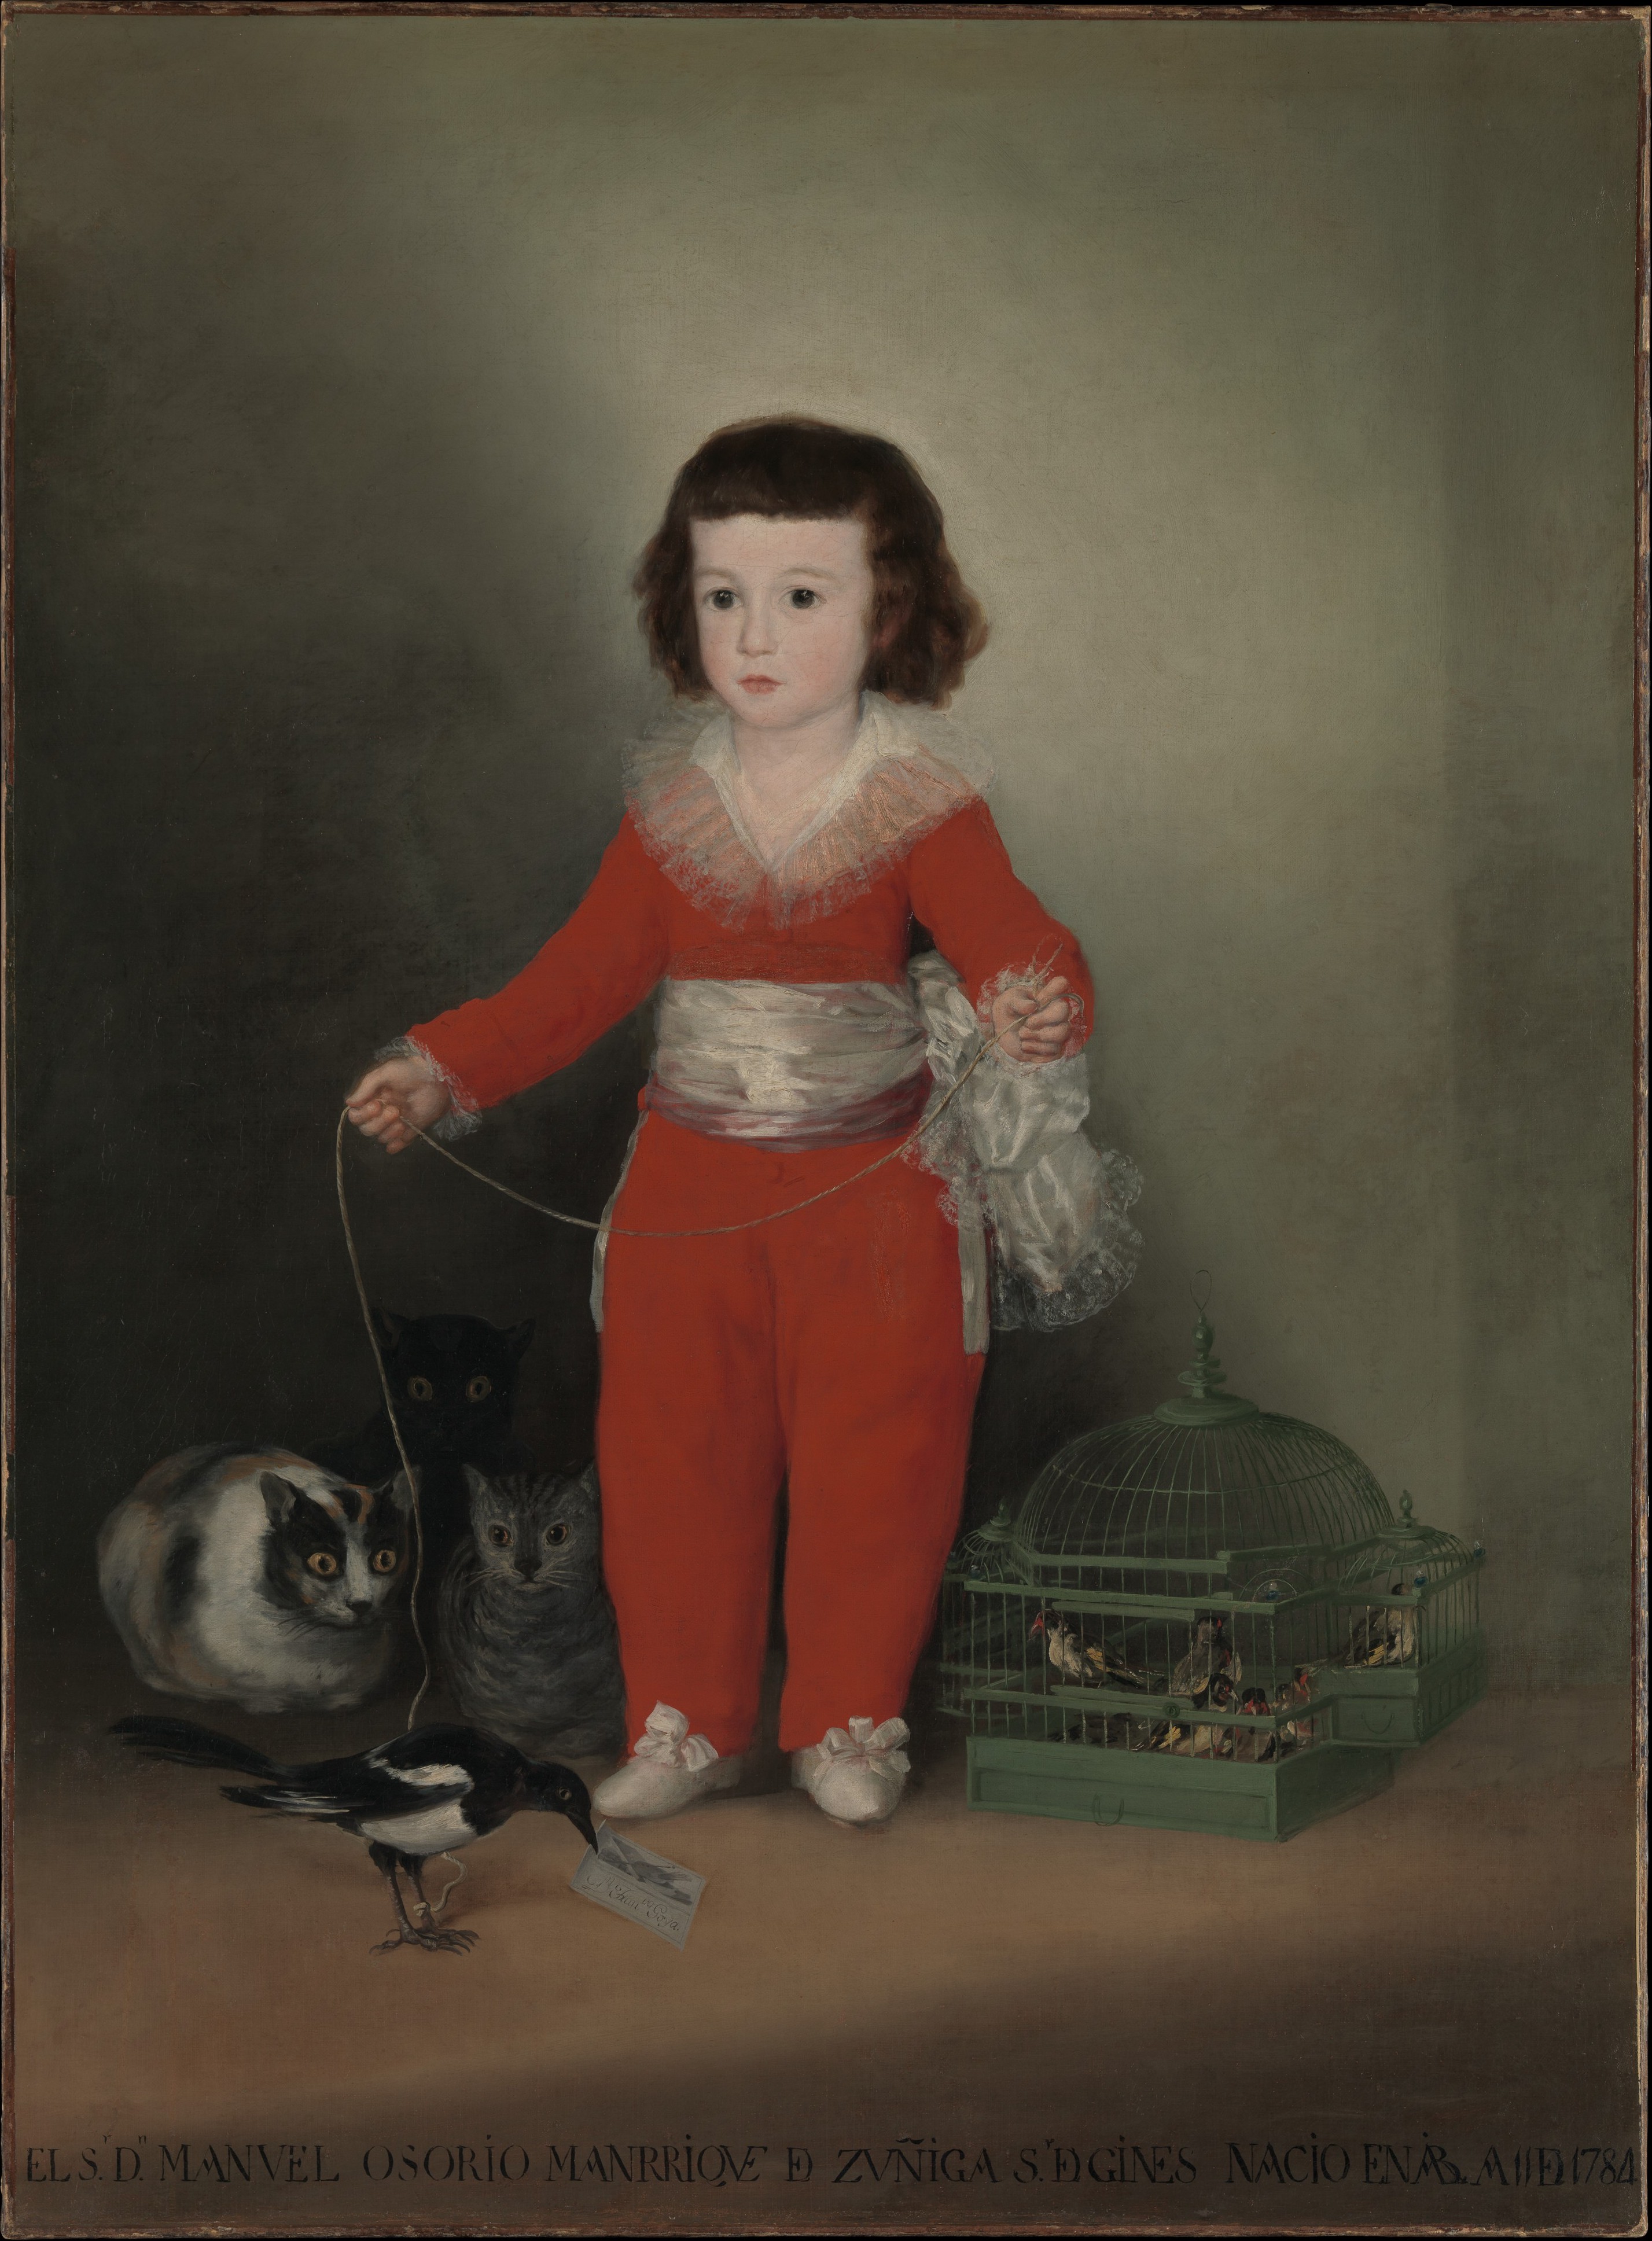 मैनुअल ओसेरियो मैनरिक डी ज़ुनीगा by Francisco Goya - १७८७–८८ - १२७ x १०१.६ सेमी 